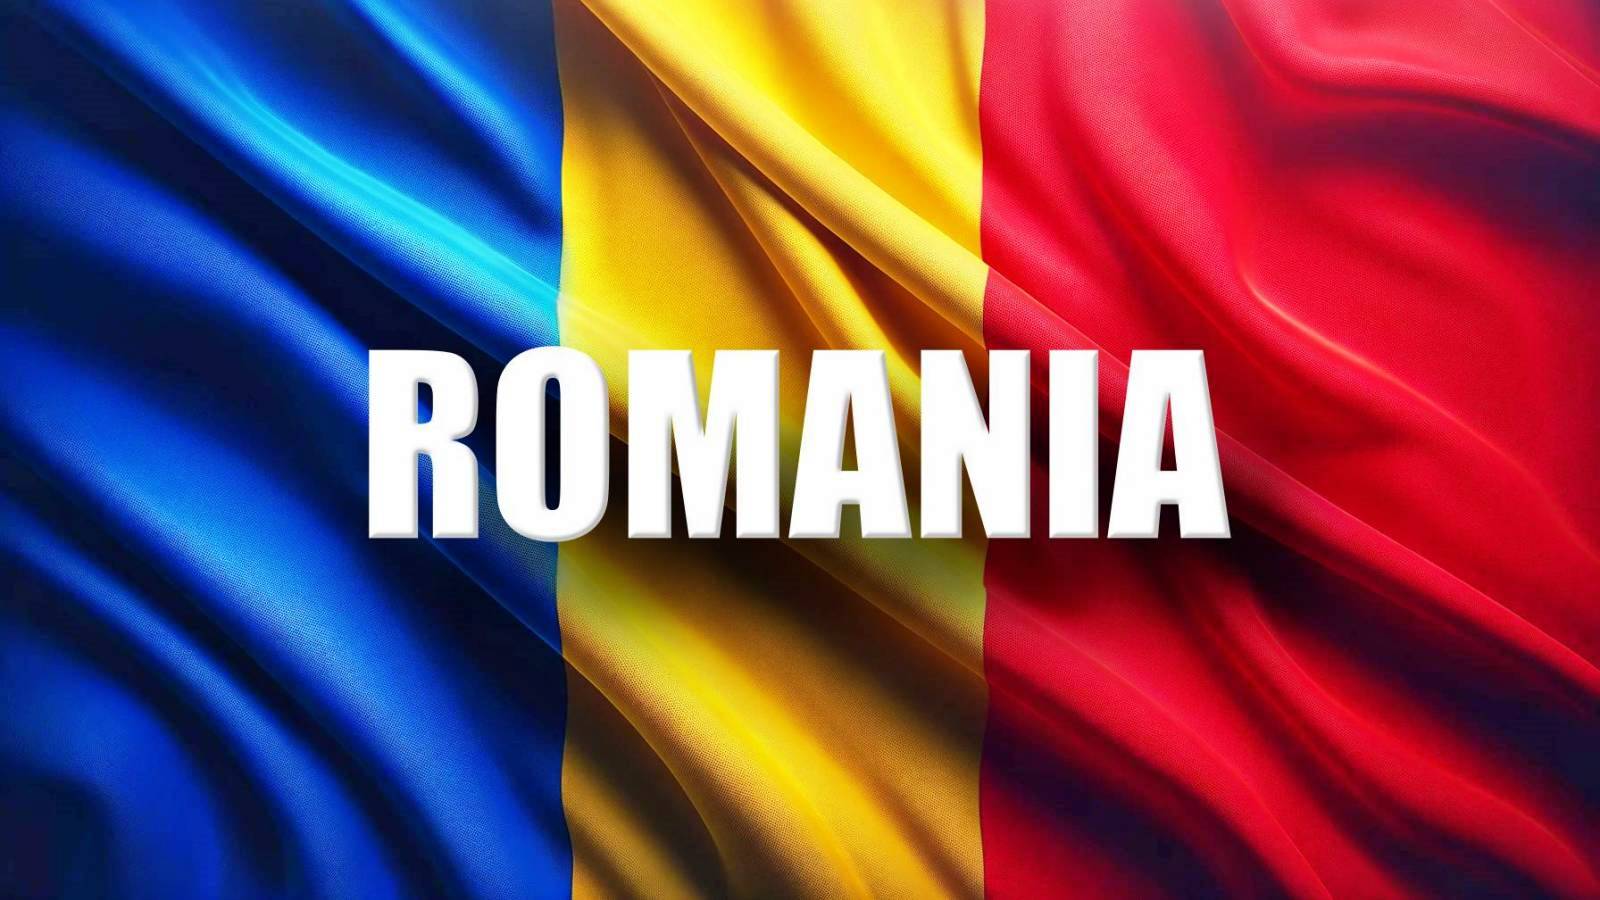 Romania ULTIMA VOLTA Misure annunciate MAGGIO Adesione a Schengen